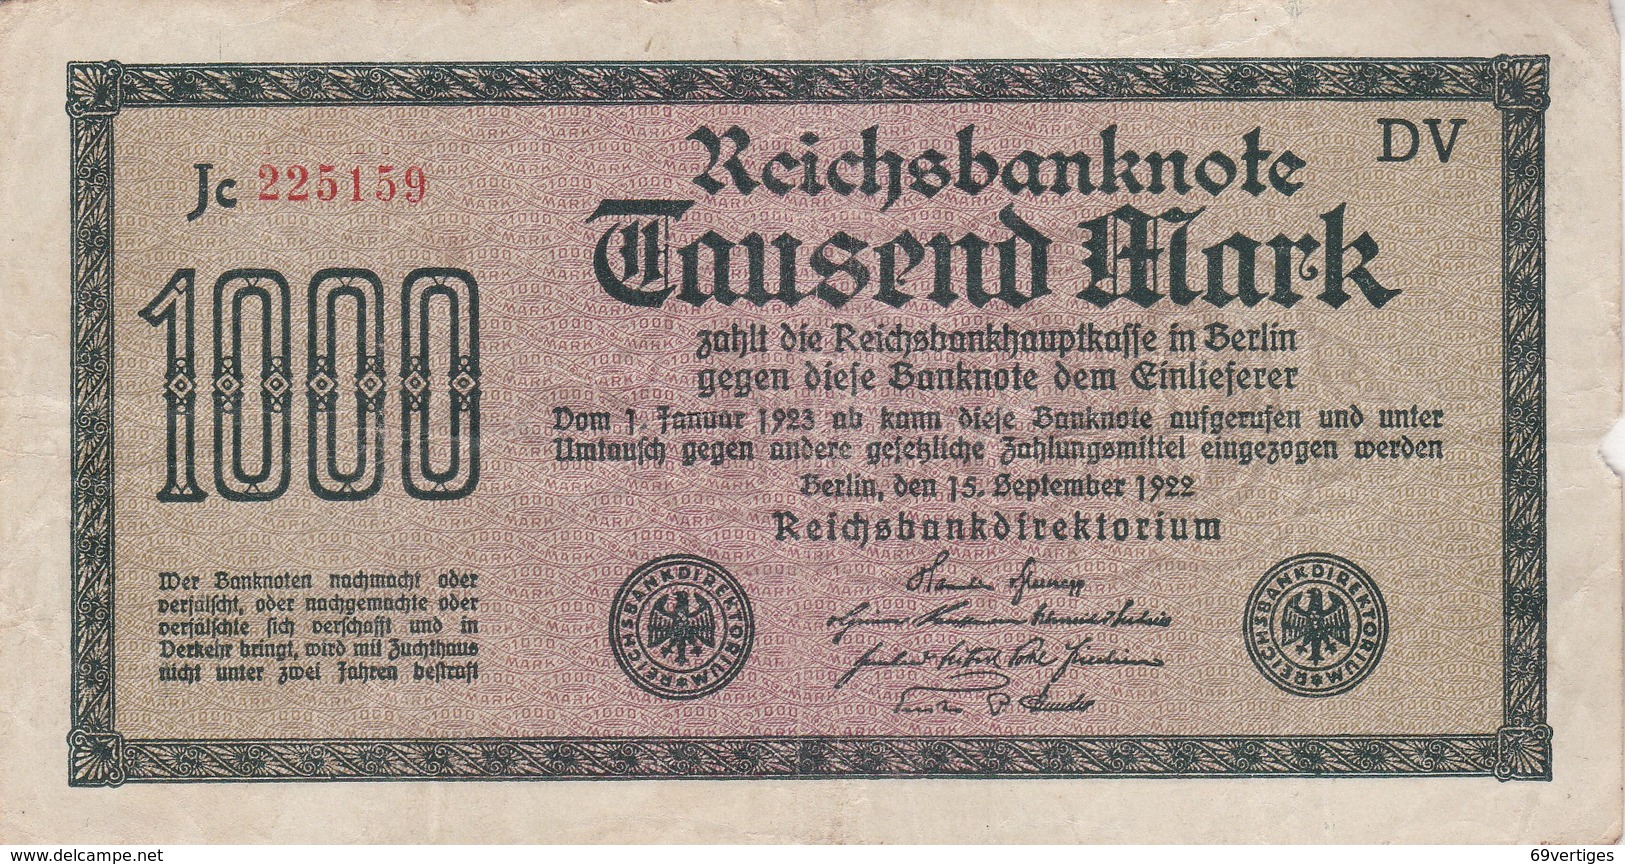 1000 MARK, Berlin 1922, Jc 225159 DV - 1000 Mark